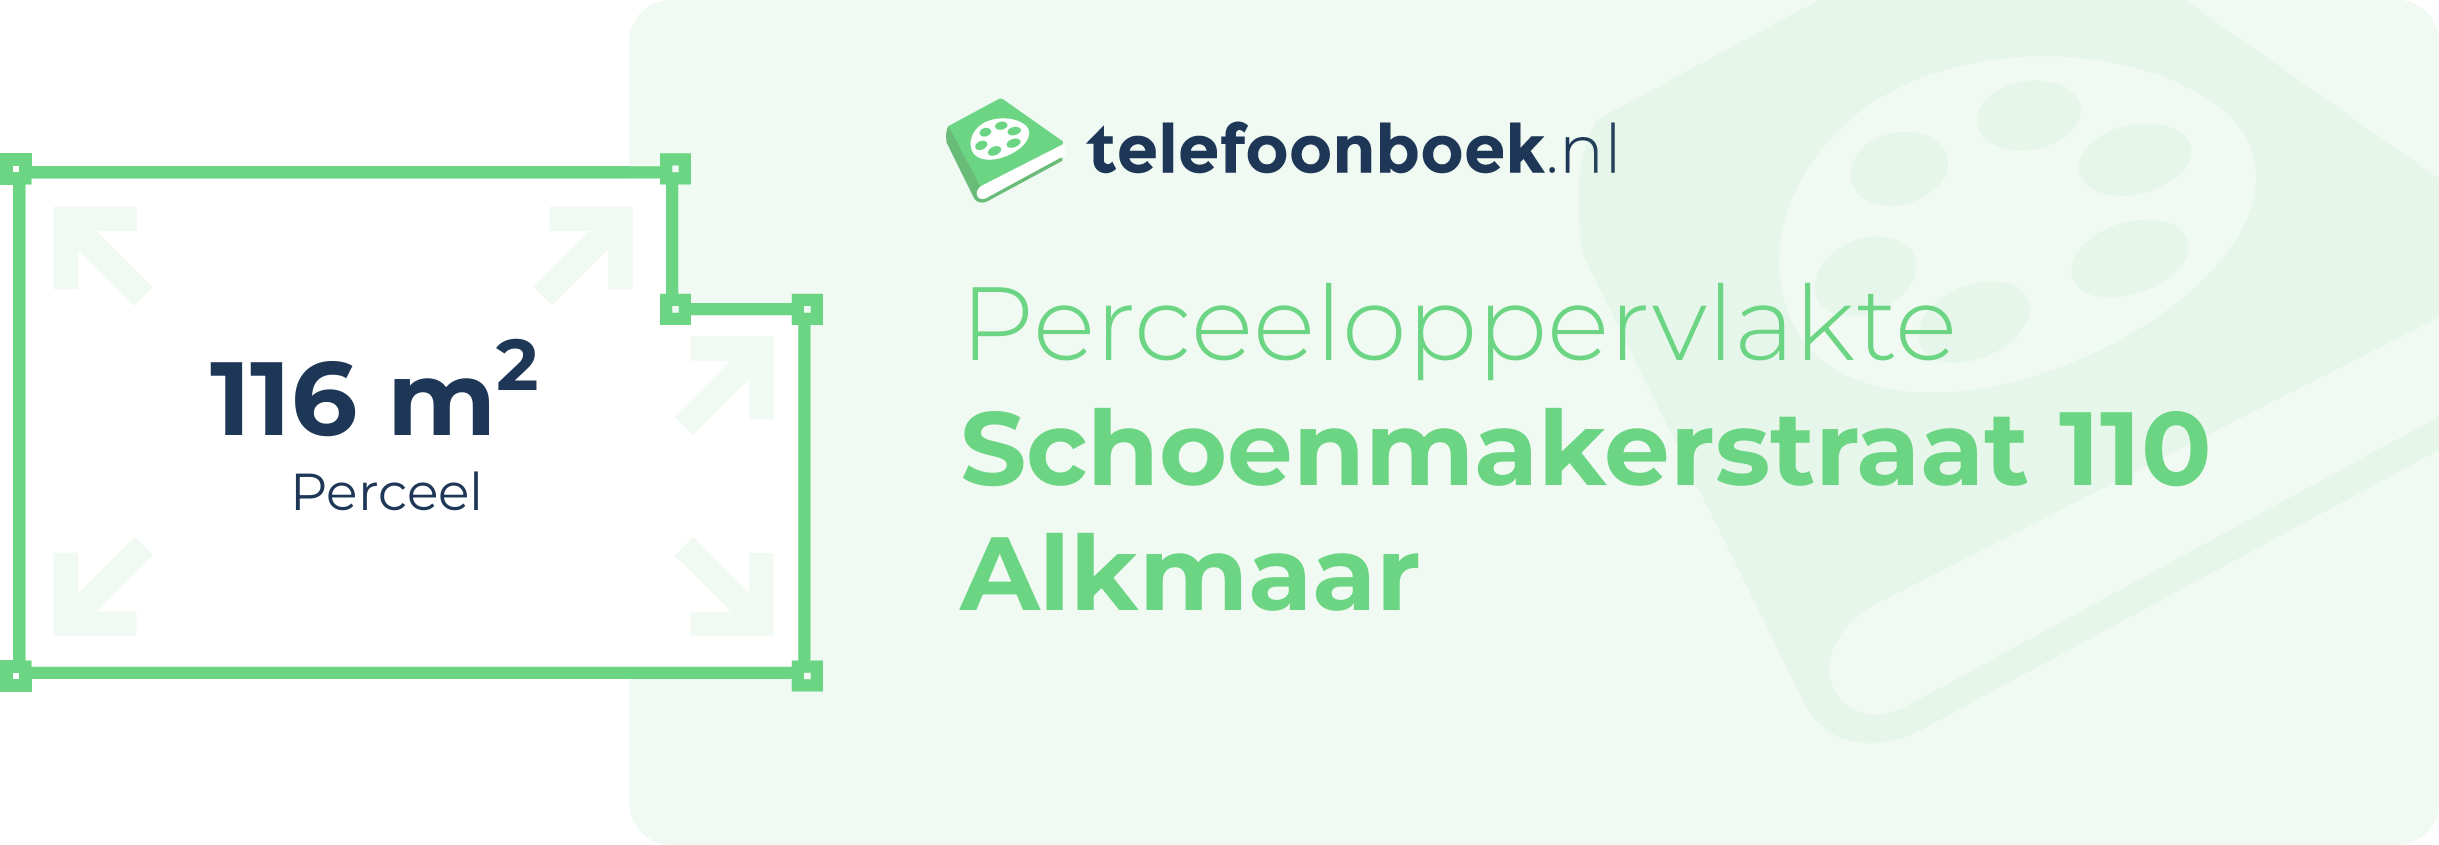 Perceeloppervlakte Schoenmakerstraat 110 Alkmaar